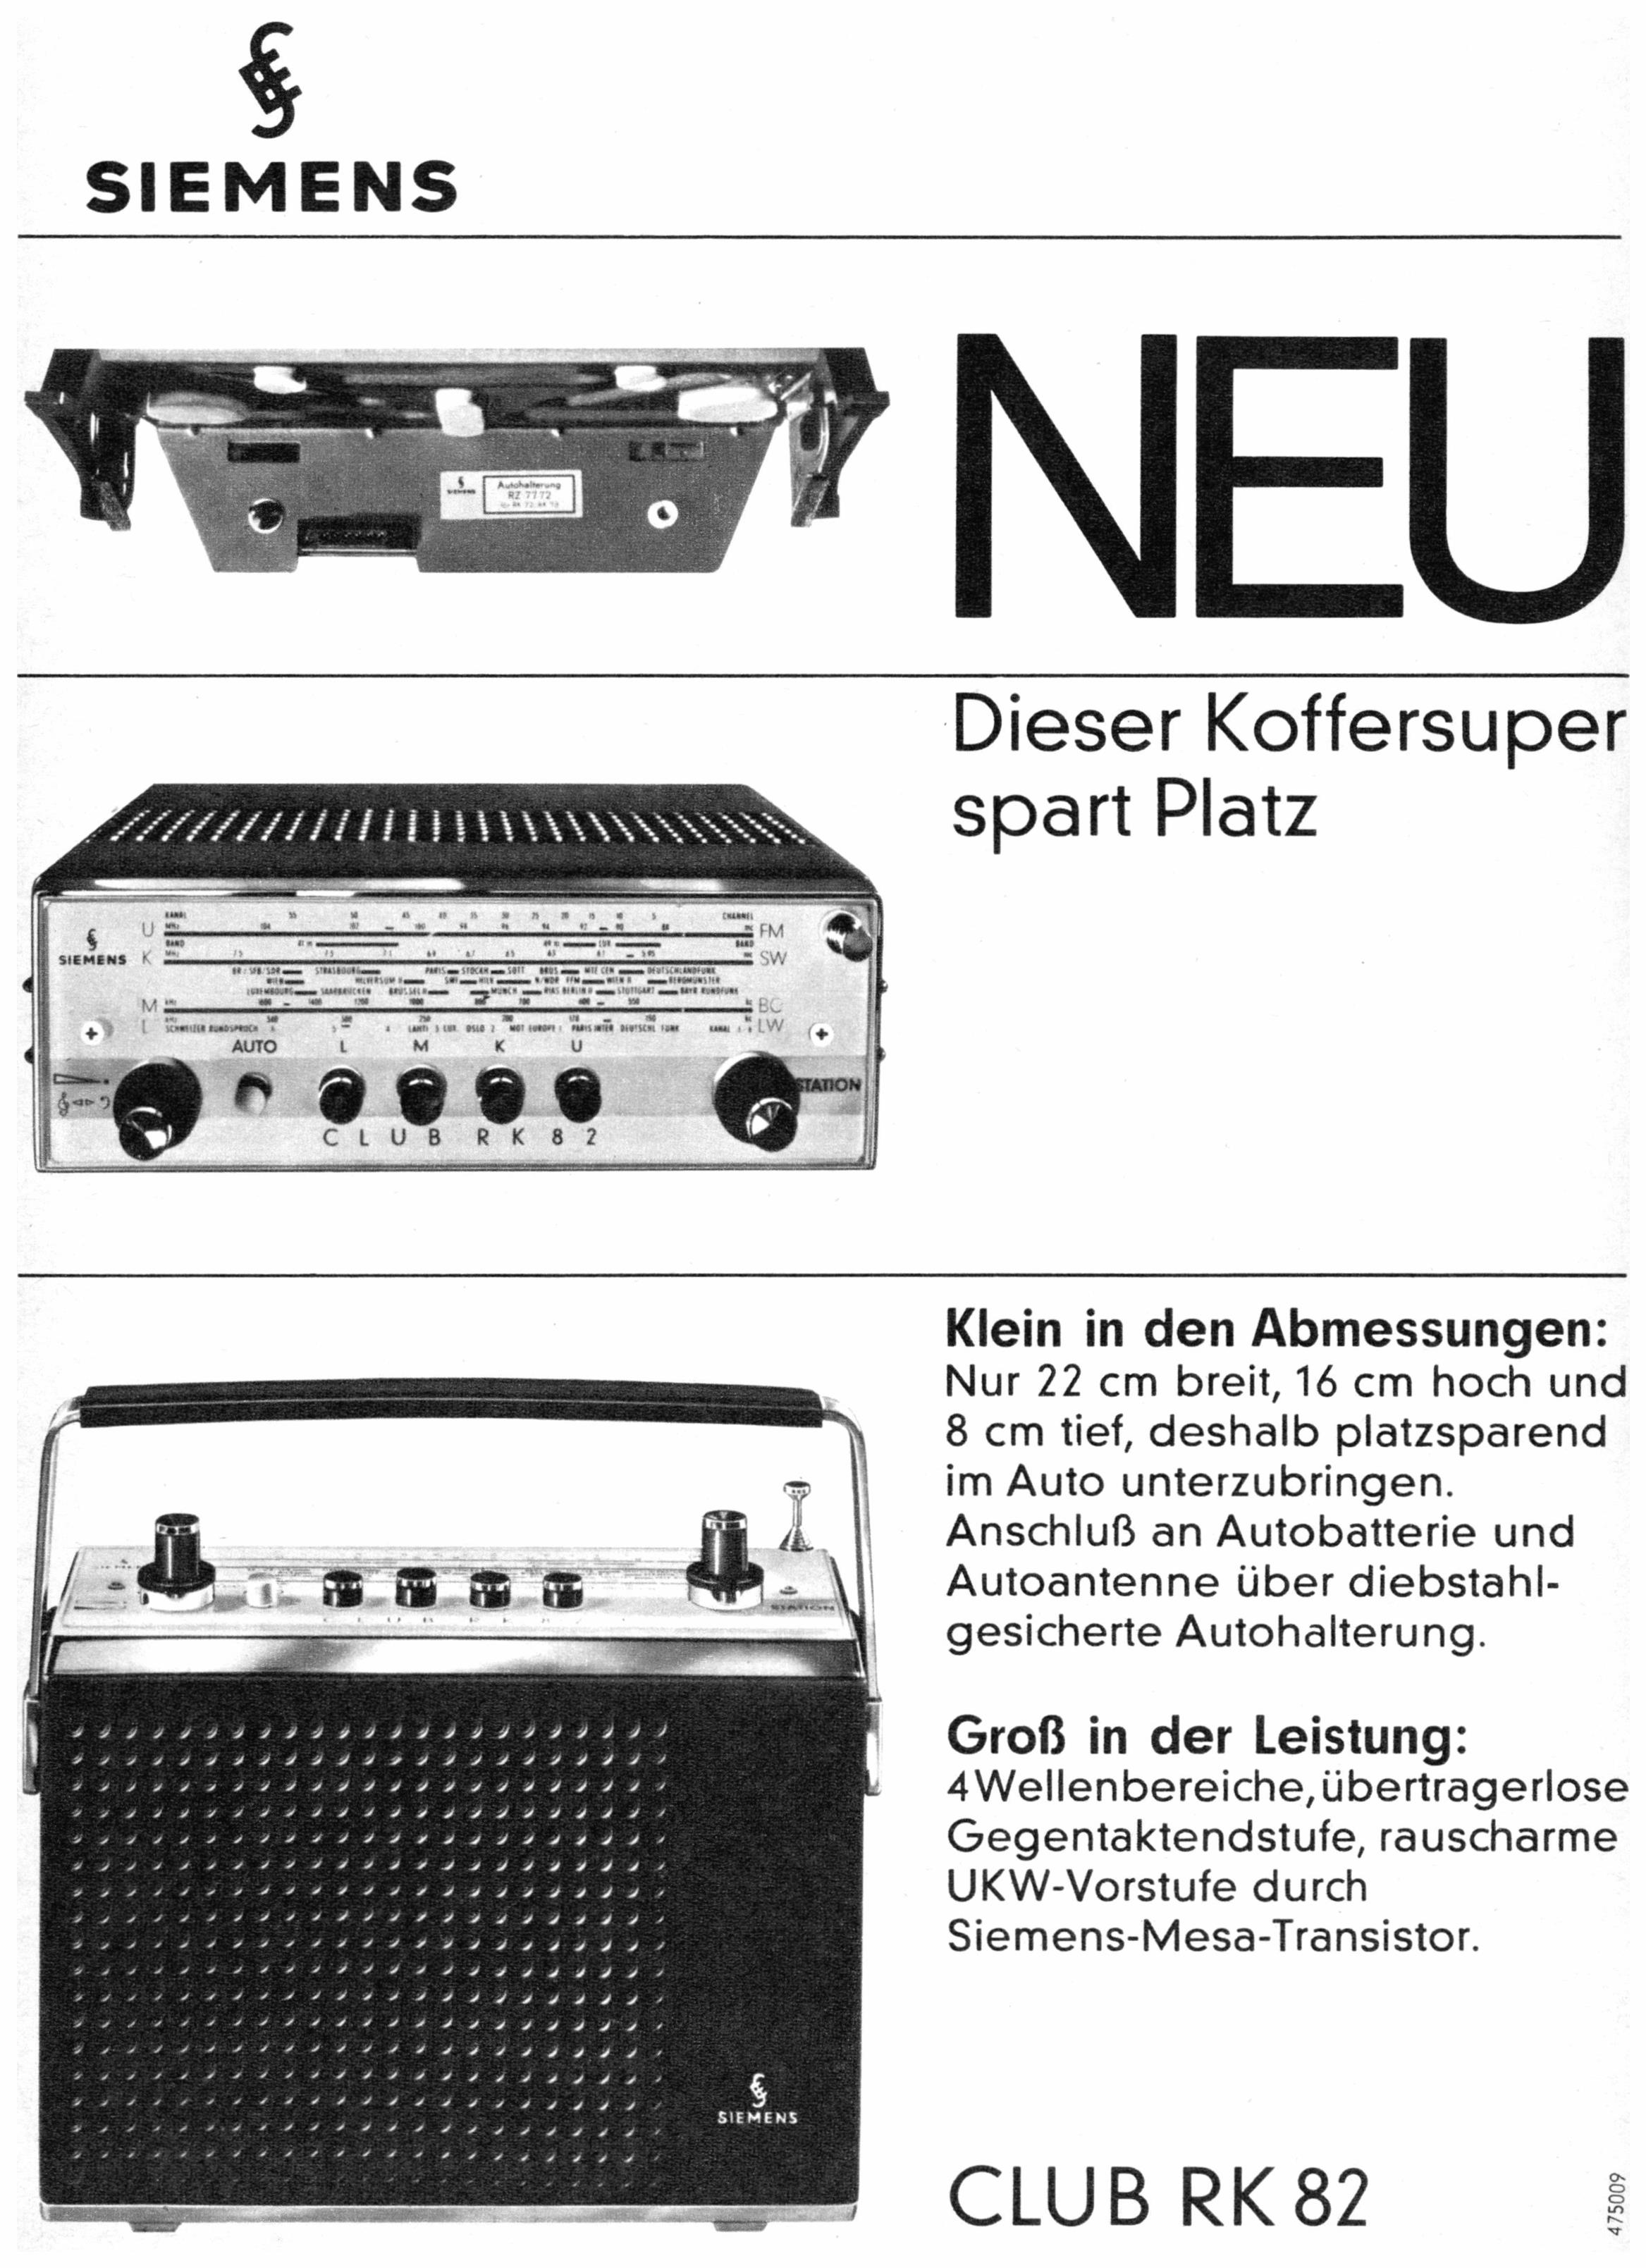 Siemens 1966 011.jpg